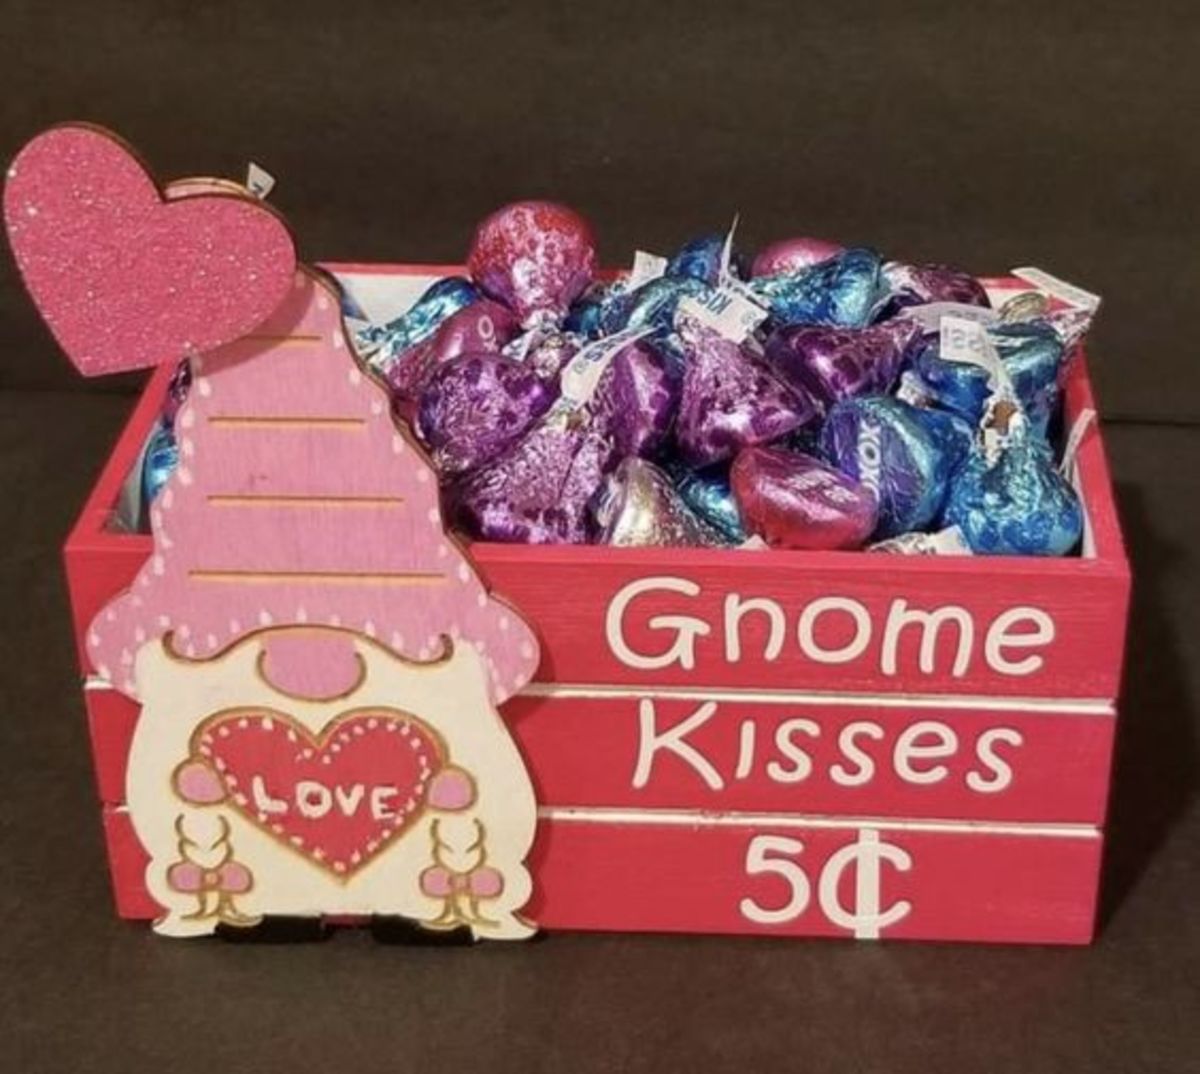 3 Dollar Store Valentine's Day Gifts Ideas Under $5 Each - Mrs